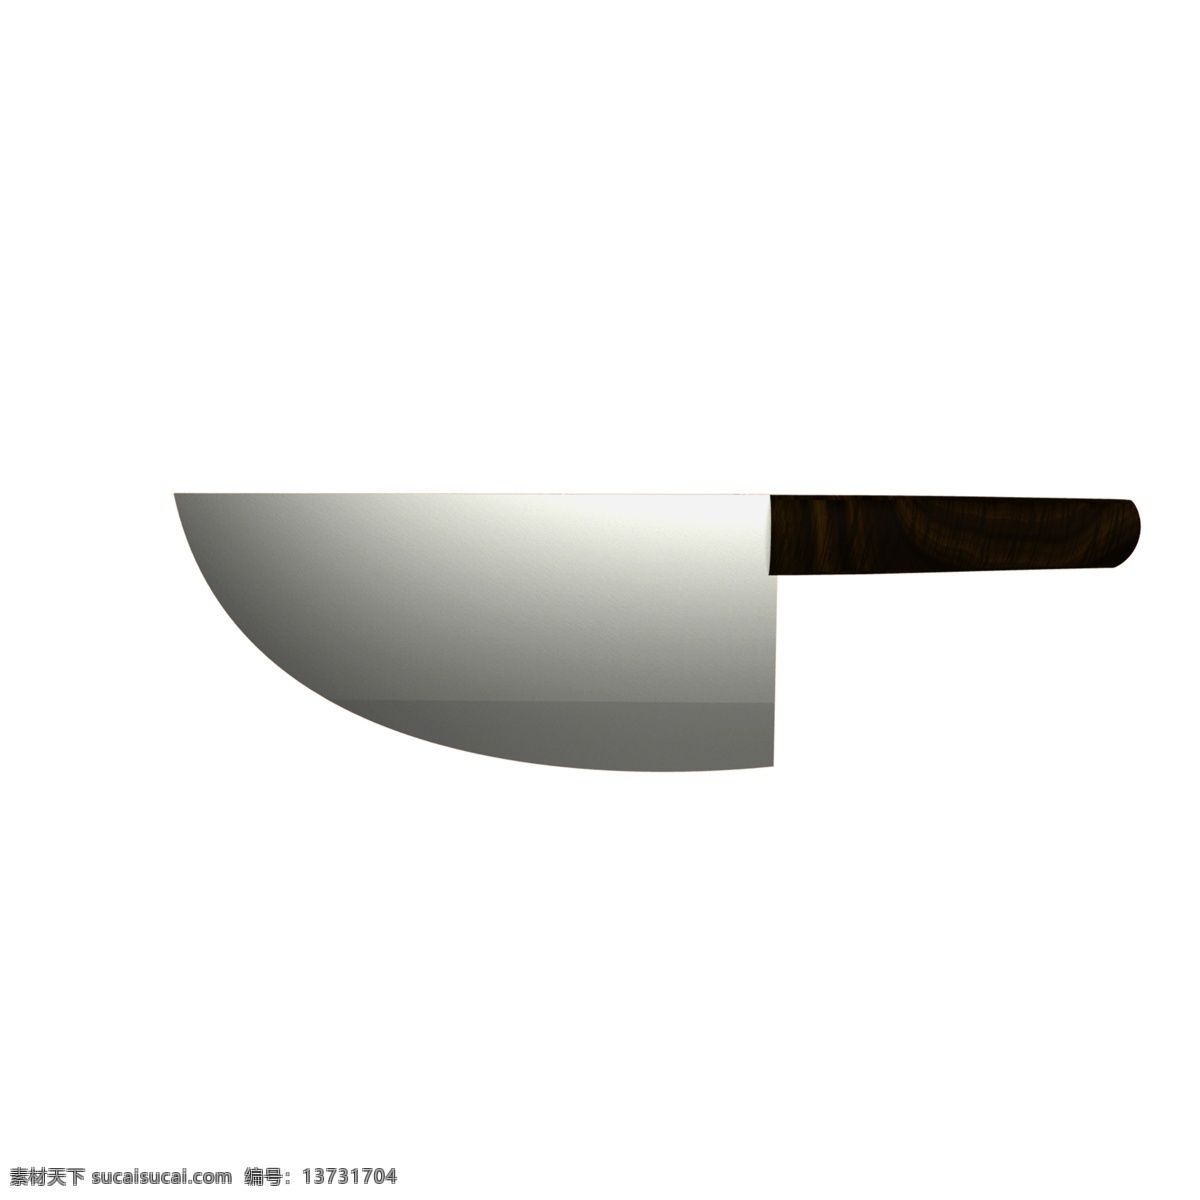 刀具 免 抠 图案 刀 菜刀 厨具 利器 危险 水果刀 厨房用品 餐具 刀具图案 刀具模型